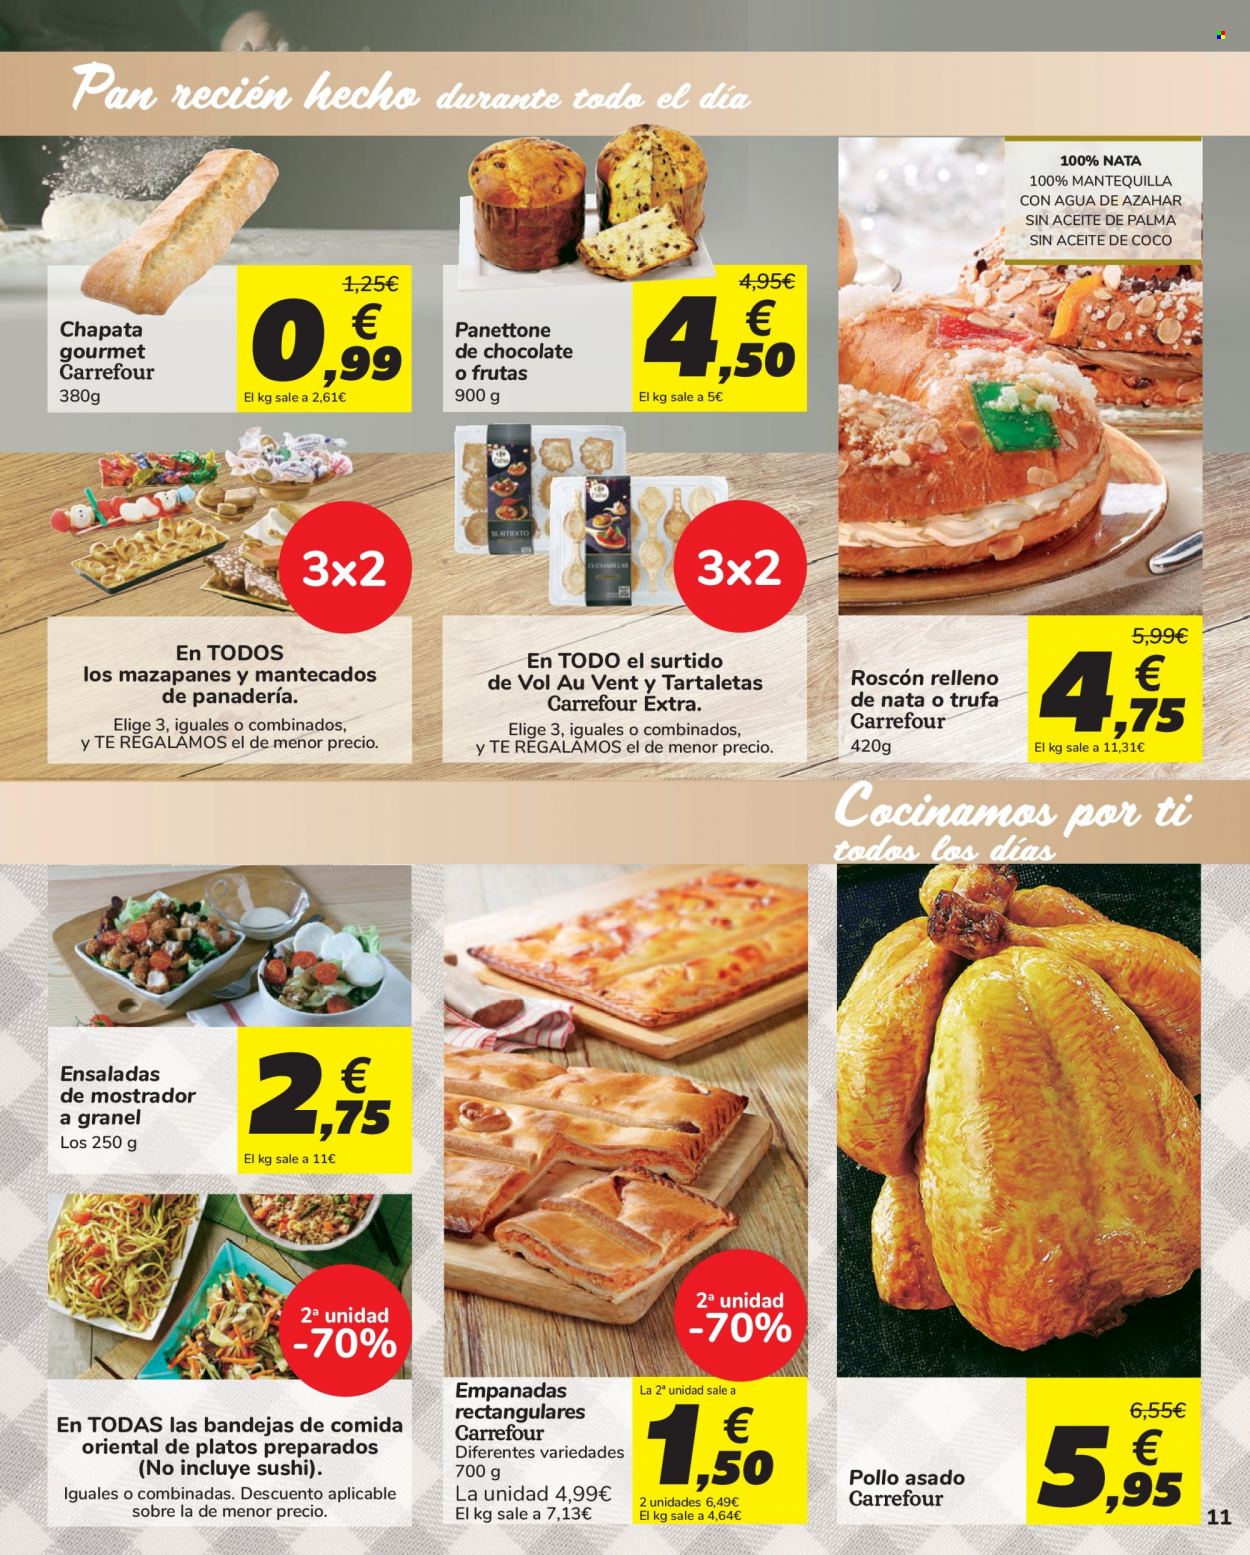 thumbnail - Folleto actual Carrefour - 03/12/21 - 14/12/21 - Ventas - pollo, empanada, chapata, pan, panettone, roscón, mantecado, trufa. Página 11.